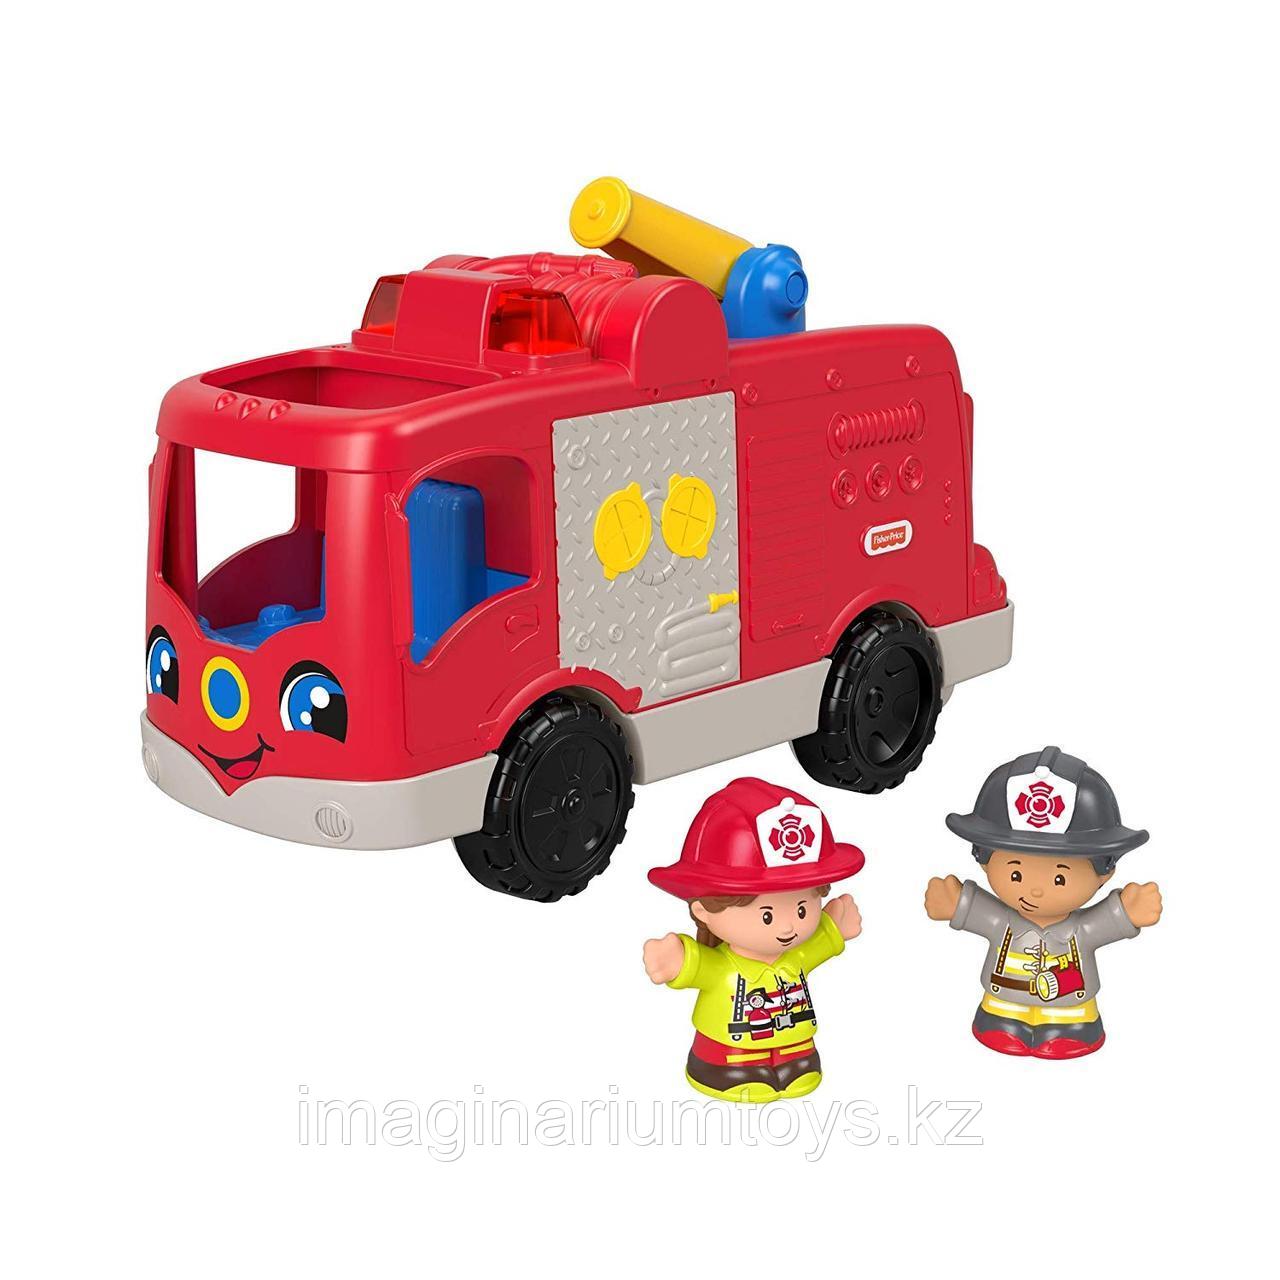 Игрушка для детей «Пожарная машина» со звуком и светом, фото 1